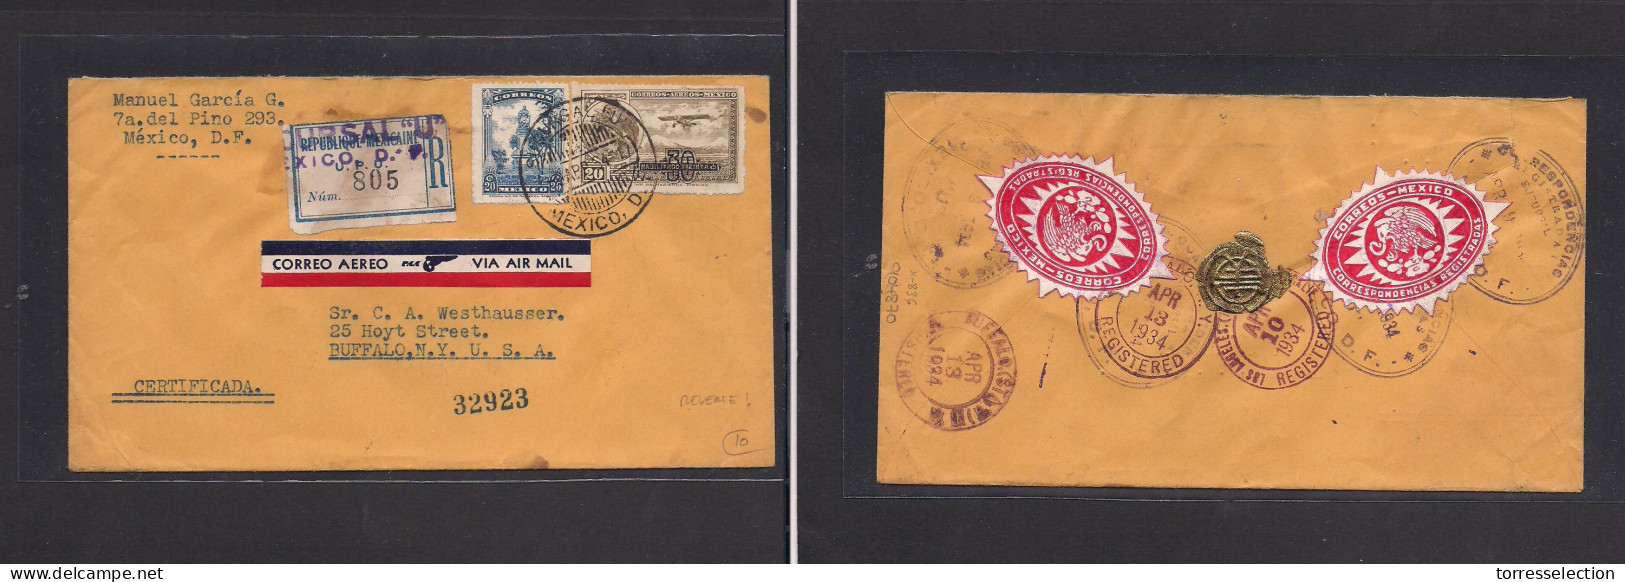 MEXICO. Mexico - Cover - 1964 DF To USA Buffalo NY Air Mult Fkd Env, Reverse Seals. Easy Deal. XSALE. - México